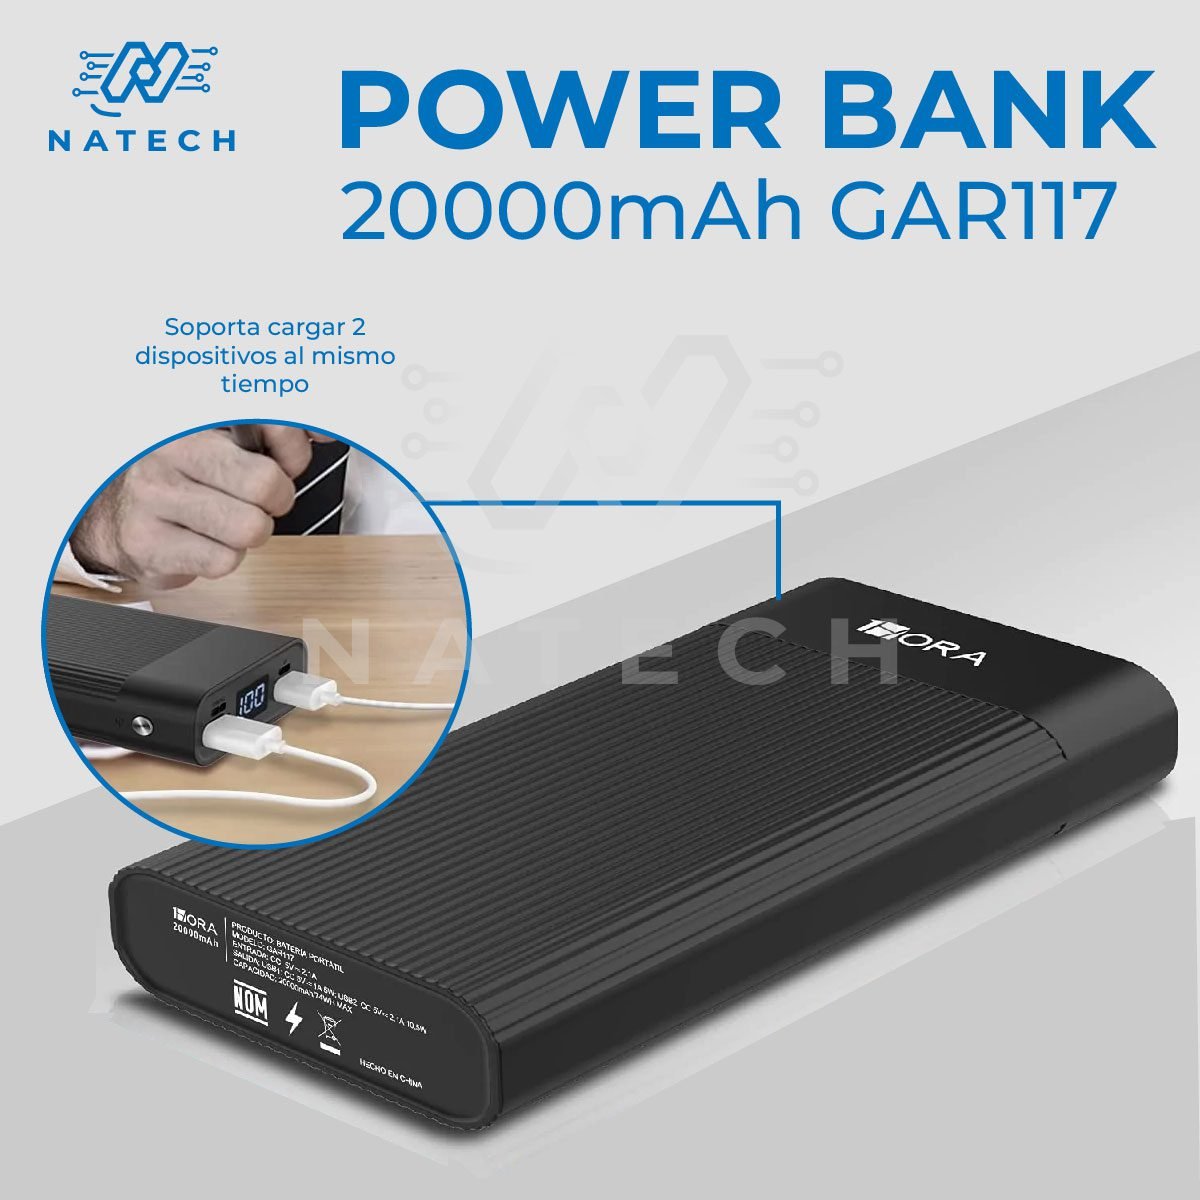 Power Bank Batería Portátil 20000mah 2.1a Carga Rápida 1hora Blanco